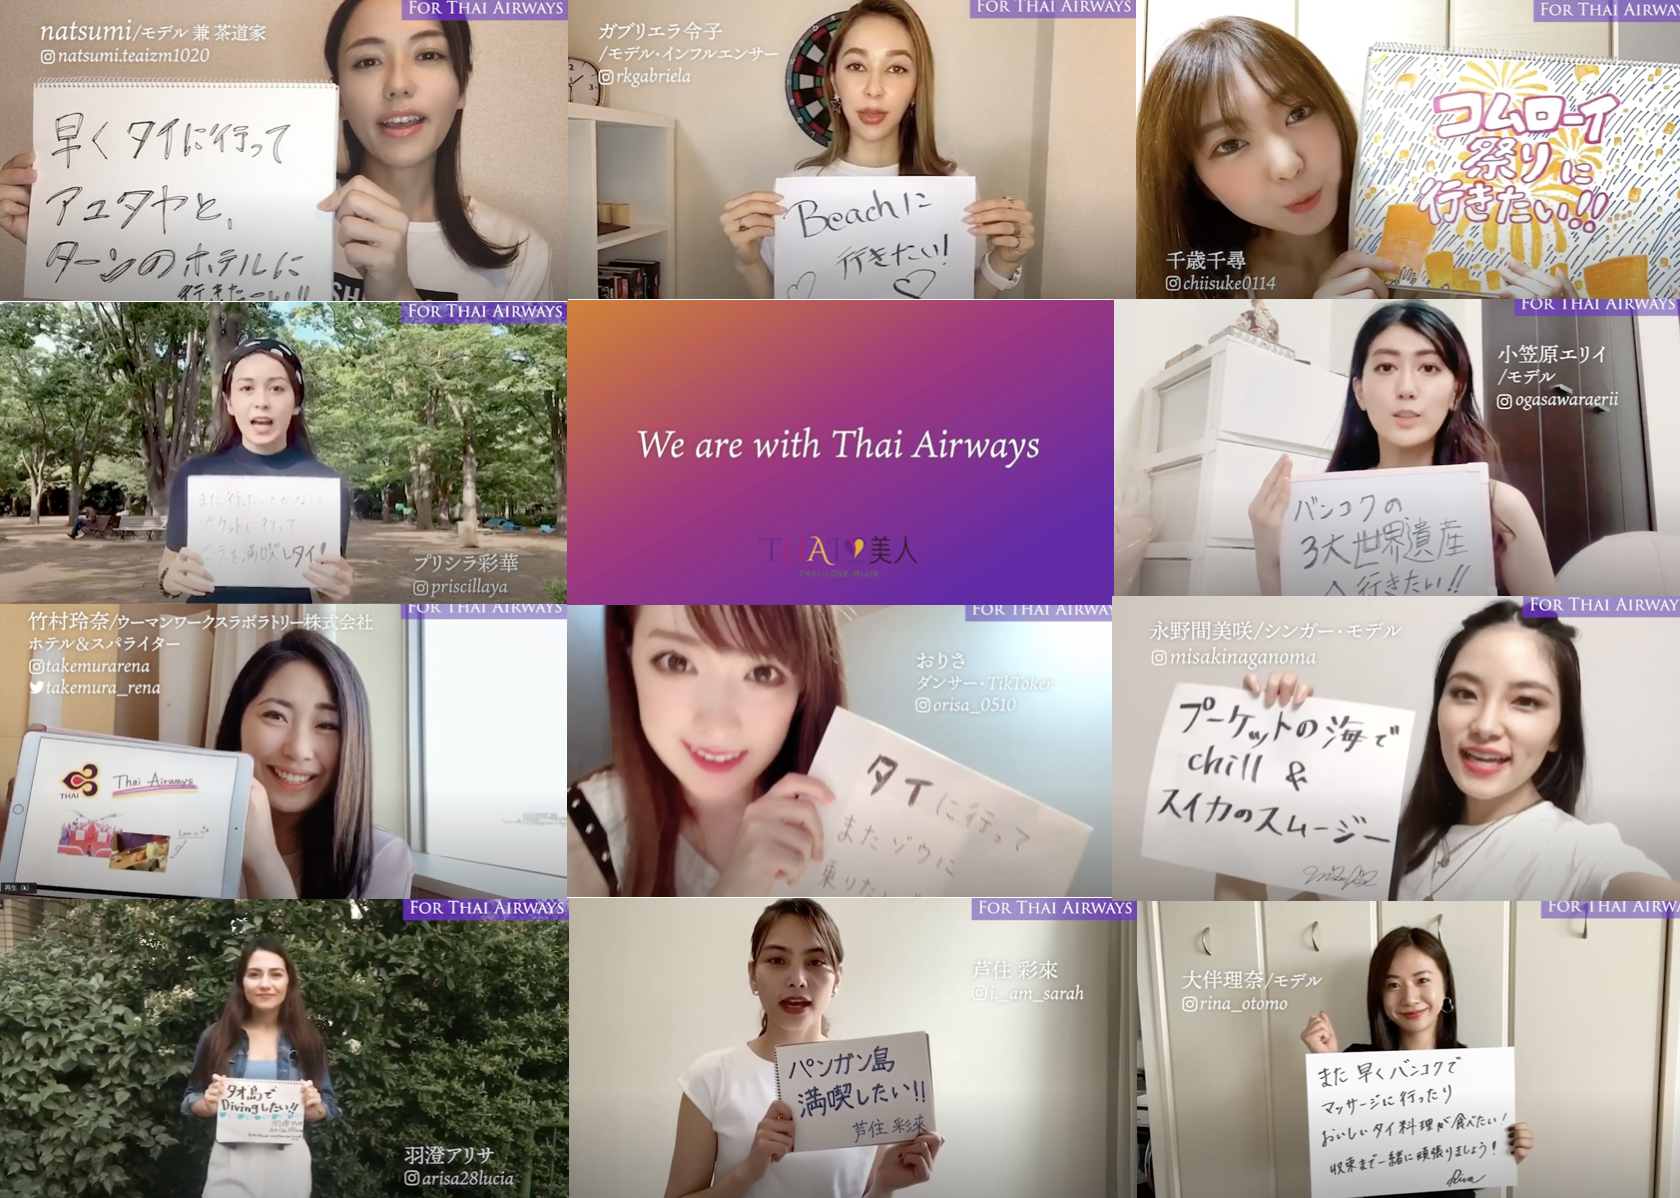 タイ国際航空様応援メッセージ動画を制作しました。